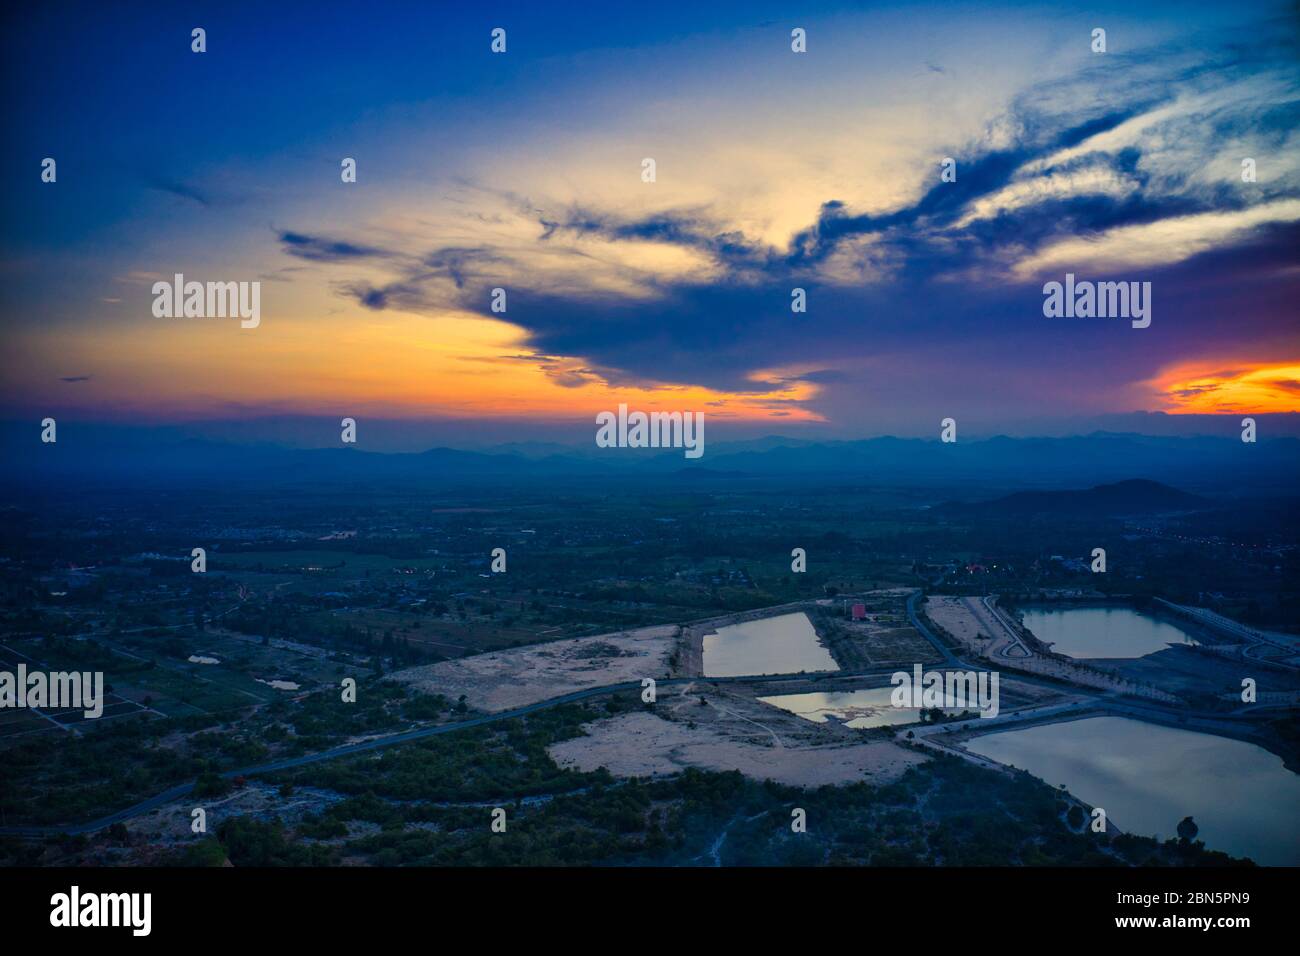 Questa foto unica mostra il paesaggio collinare con i laghi, da hua Hin in thailandia, scattata con un drone durante un fantastico tramonto! Foto Stock